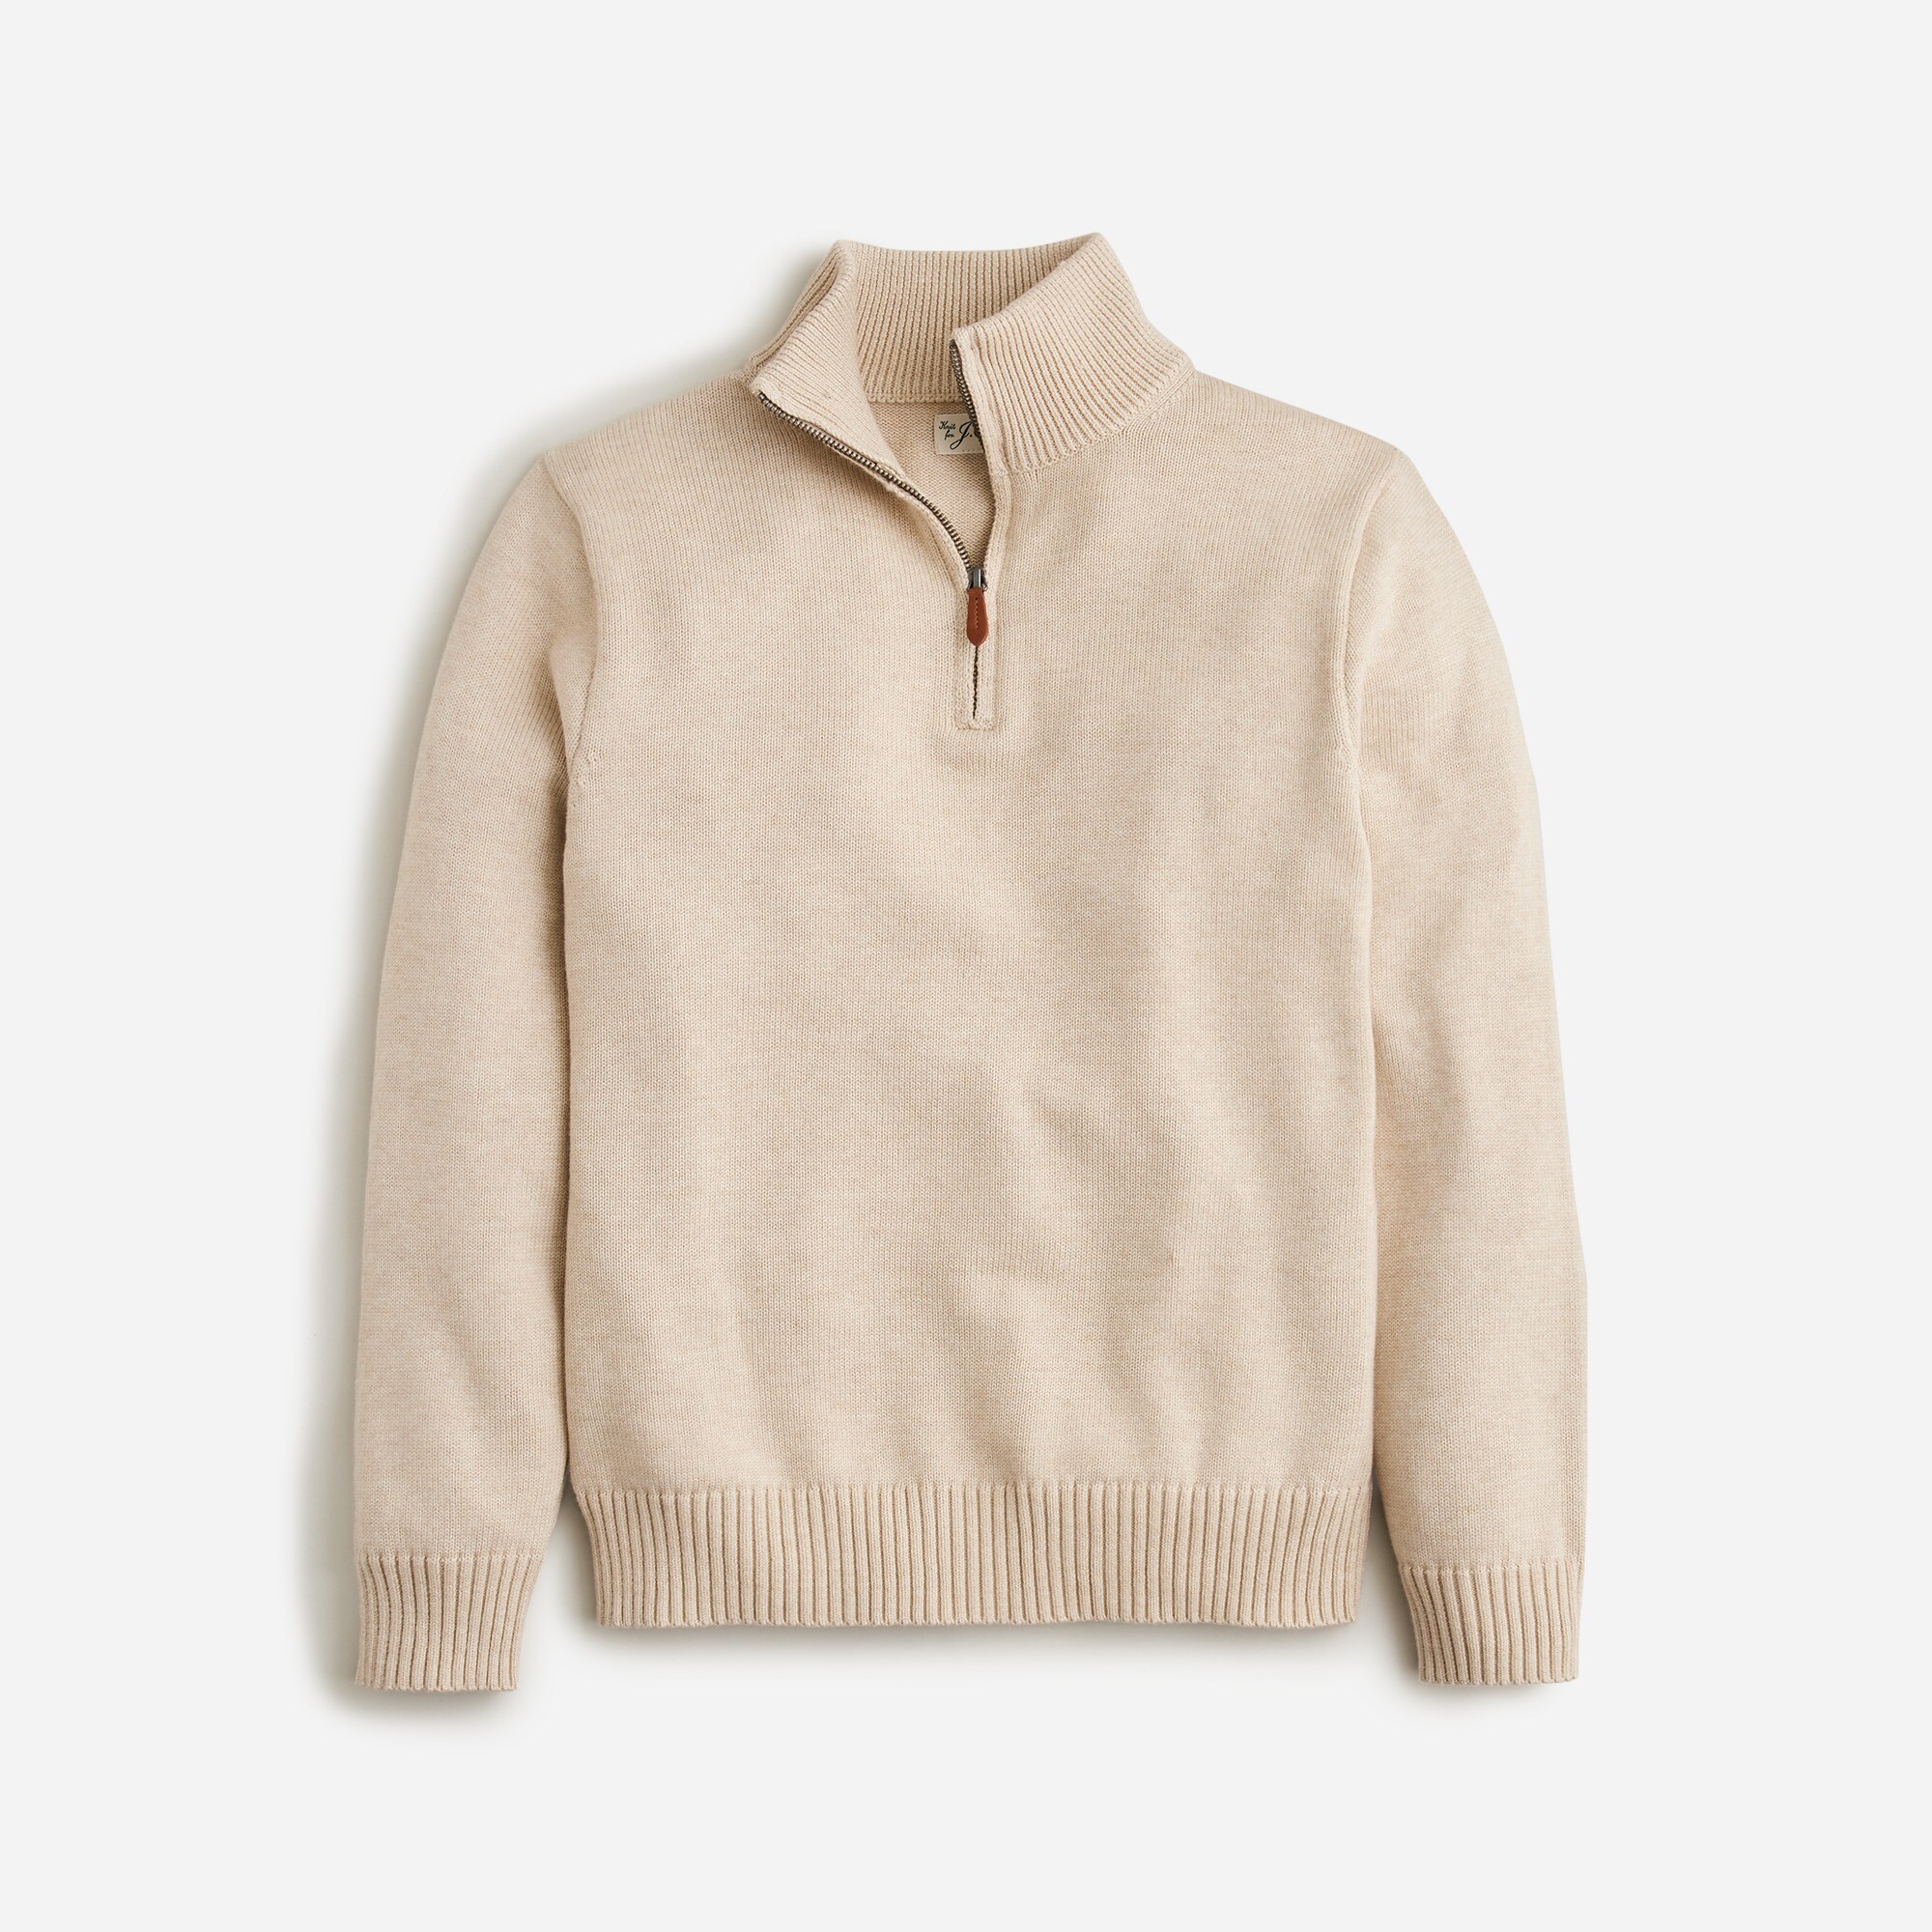 mens Heritage cotton half-zip sweater